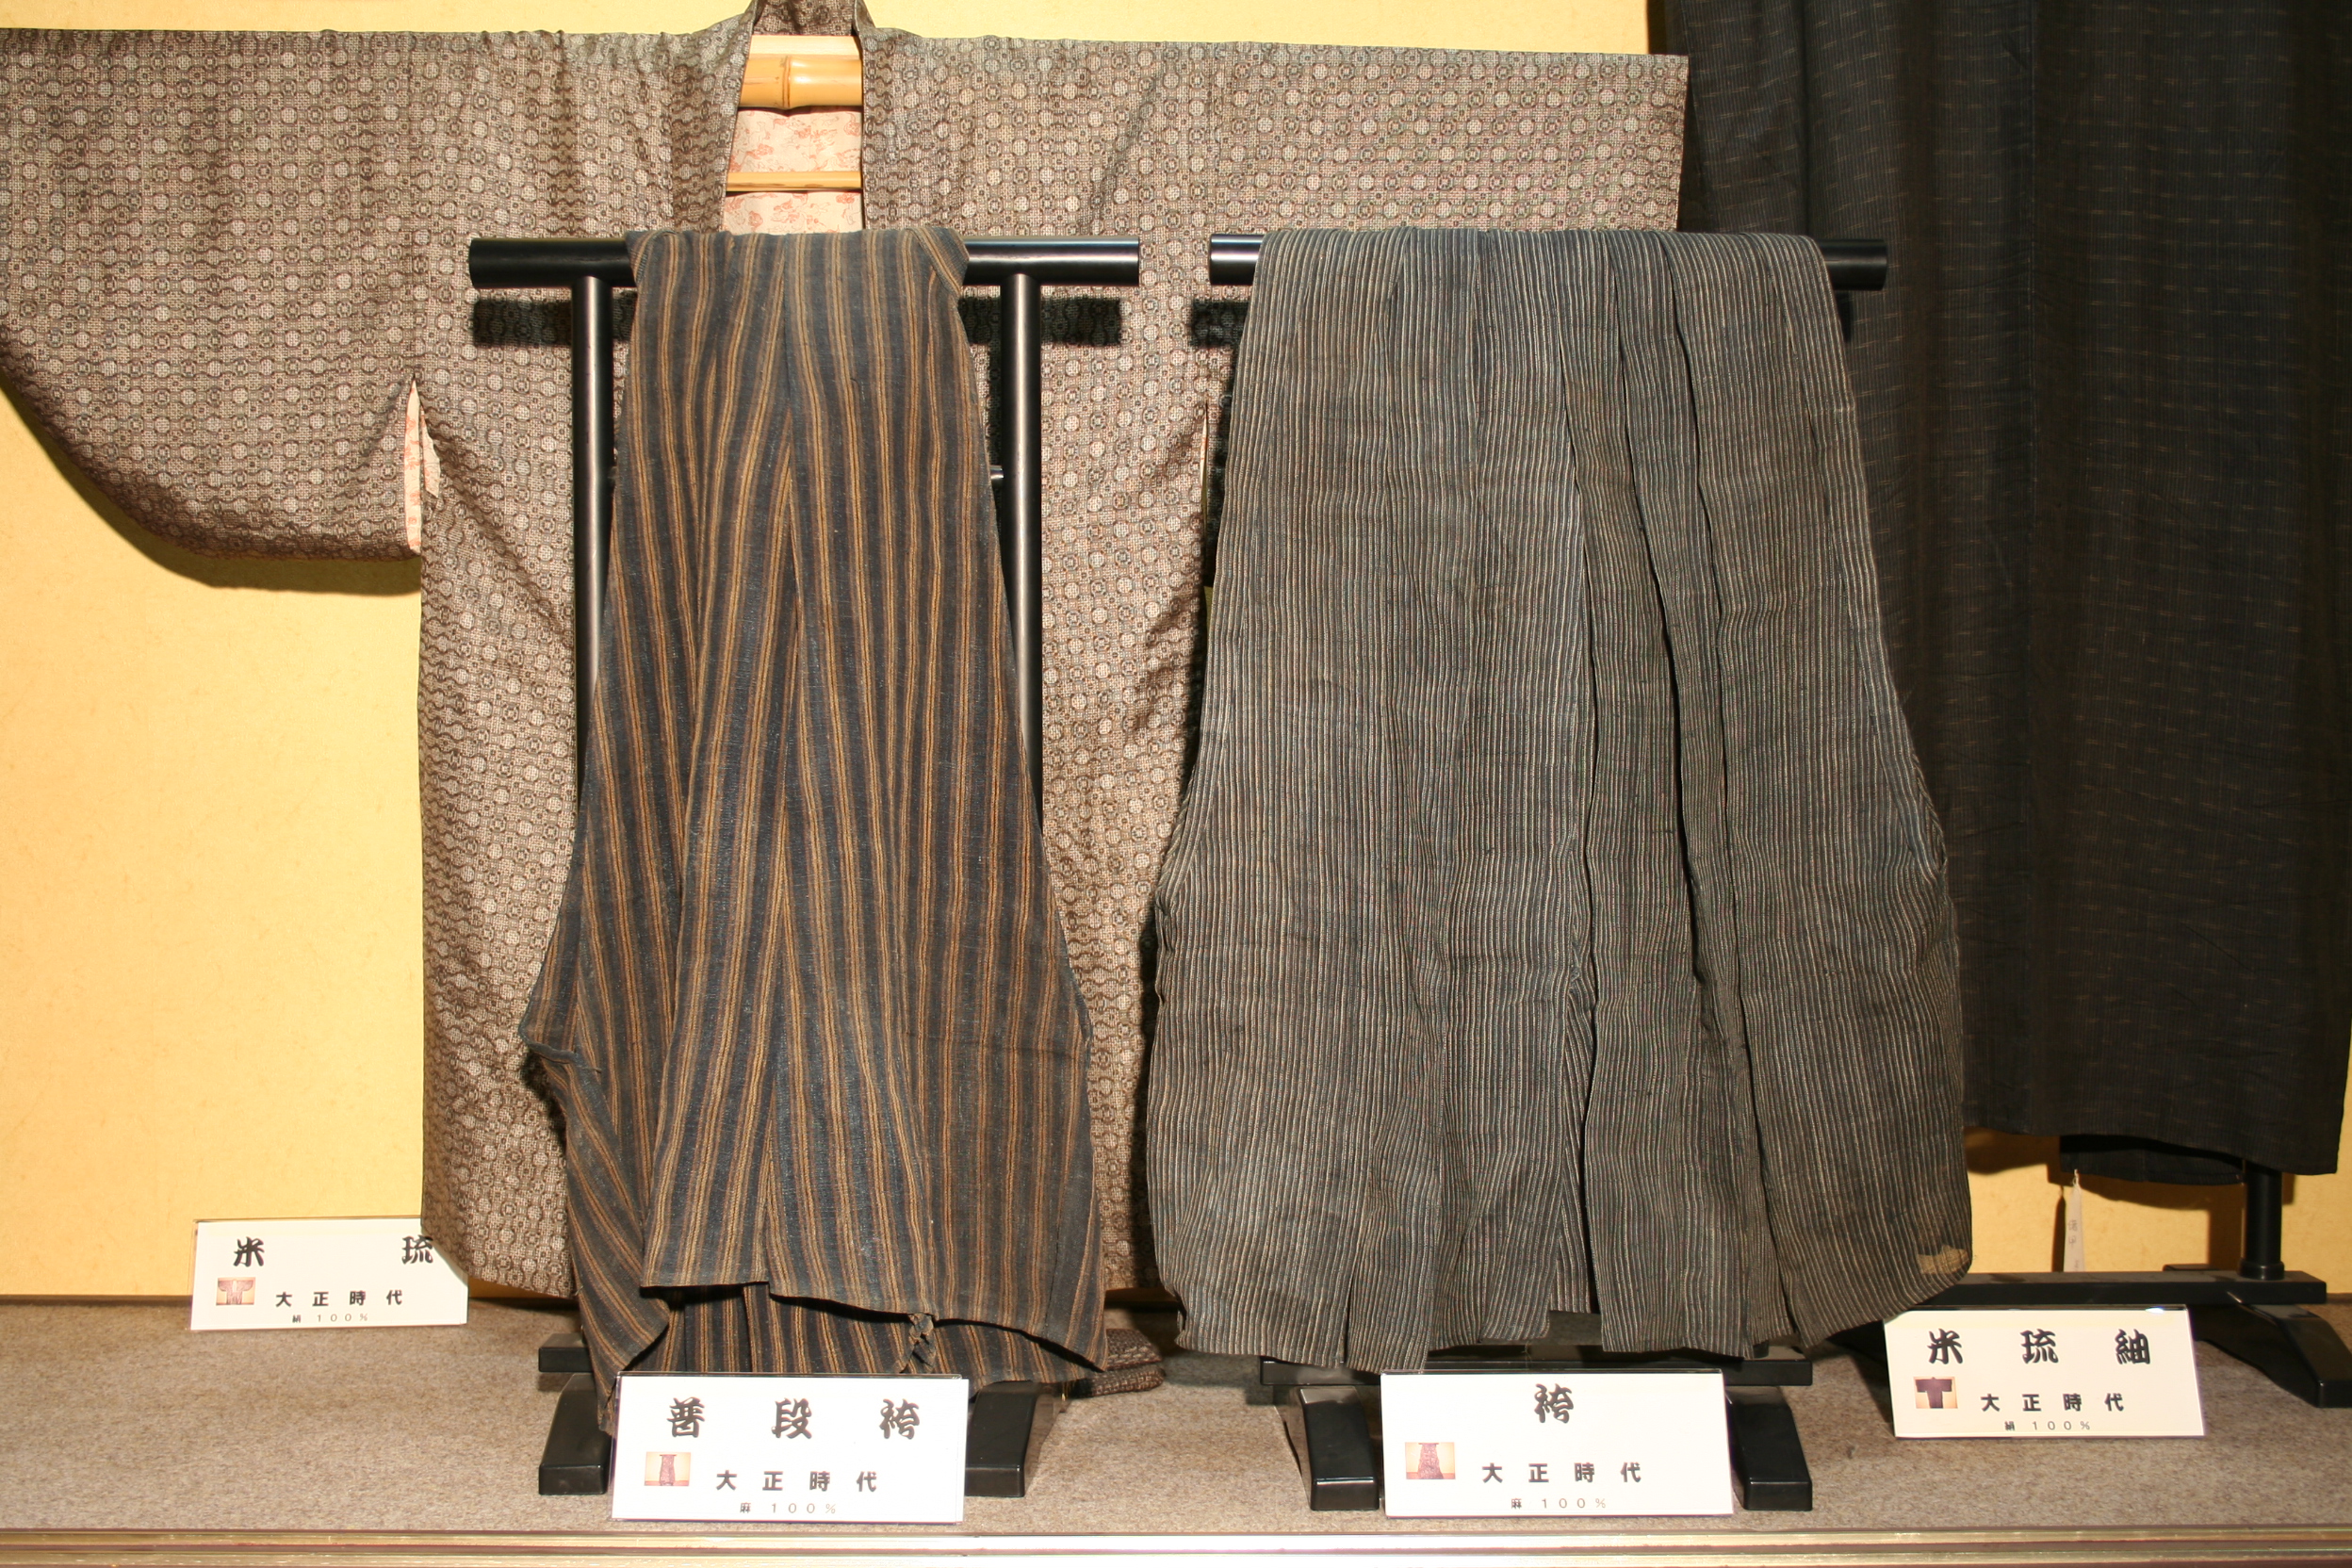 伝統工芸品「米沢織」で作られた袴の写真